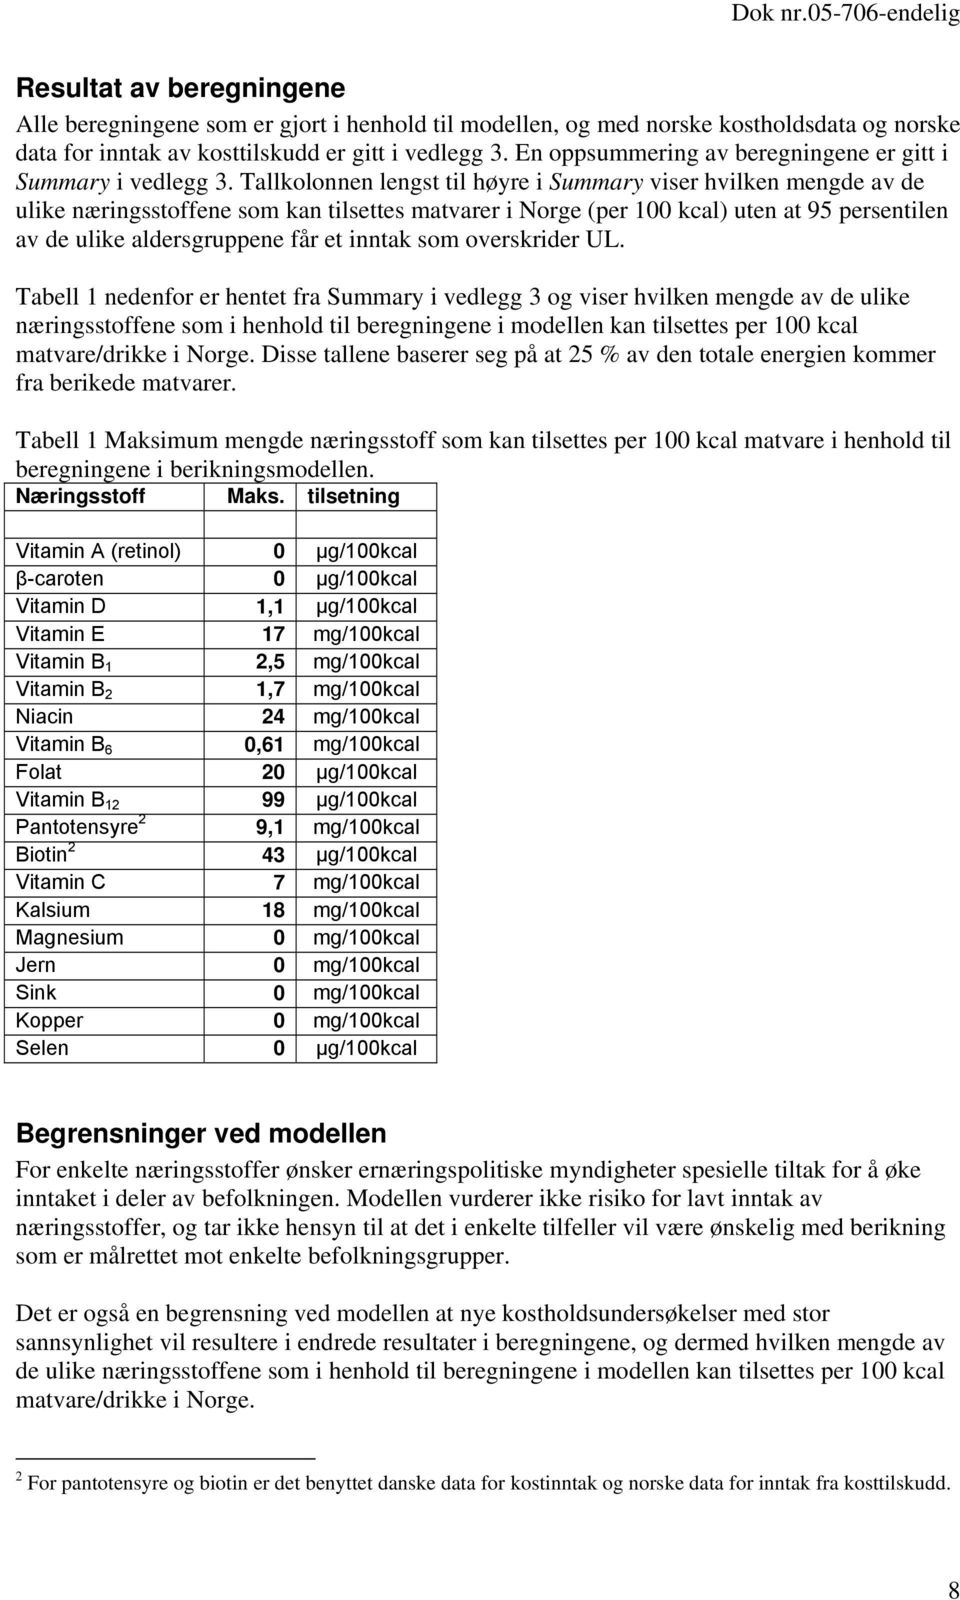 Tallkolonnen lengst til høyre i Summary viser hvilken mengde av de ulike næringsstoffene som kan tilsettes matvarer i Norge (per 100 kcal) uten at 95 persentilen av de ulike aldersgruppene får et